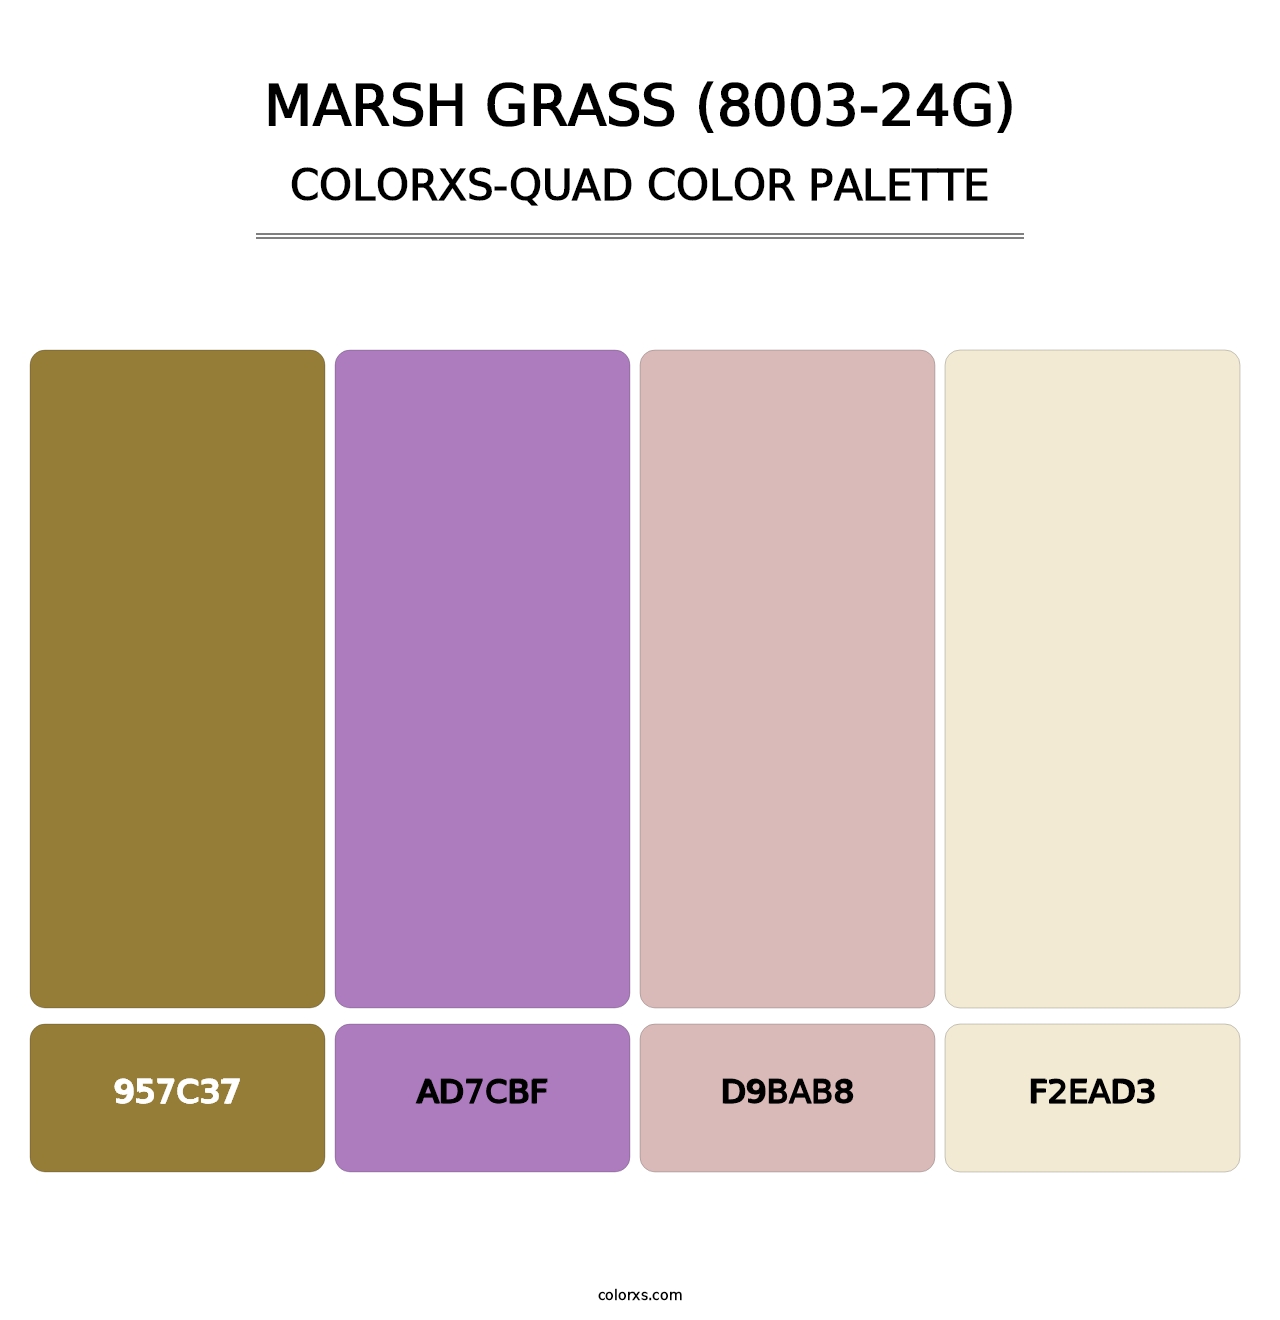 Marsh Grass (8003-24G) - Colorxs Quad Palette